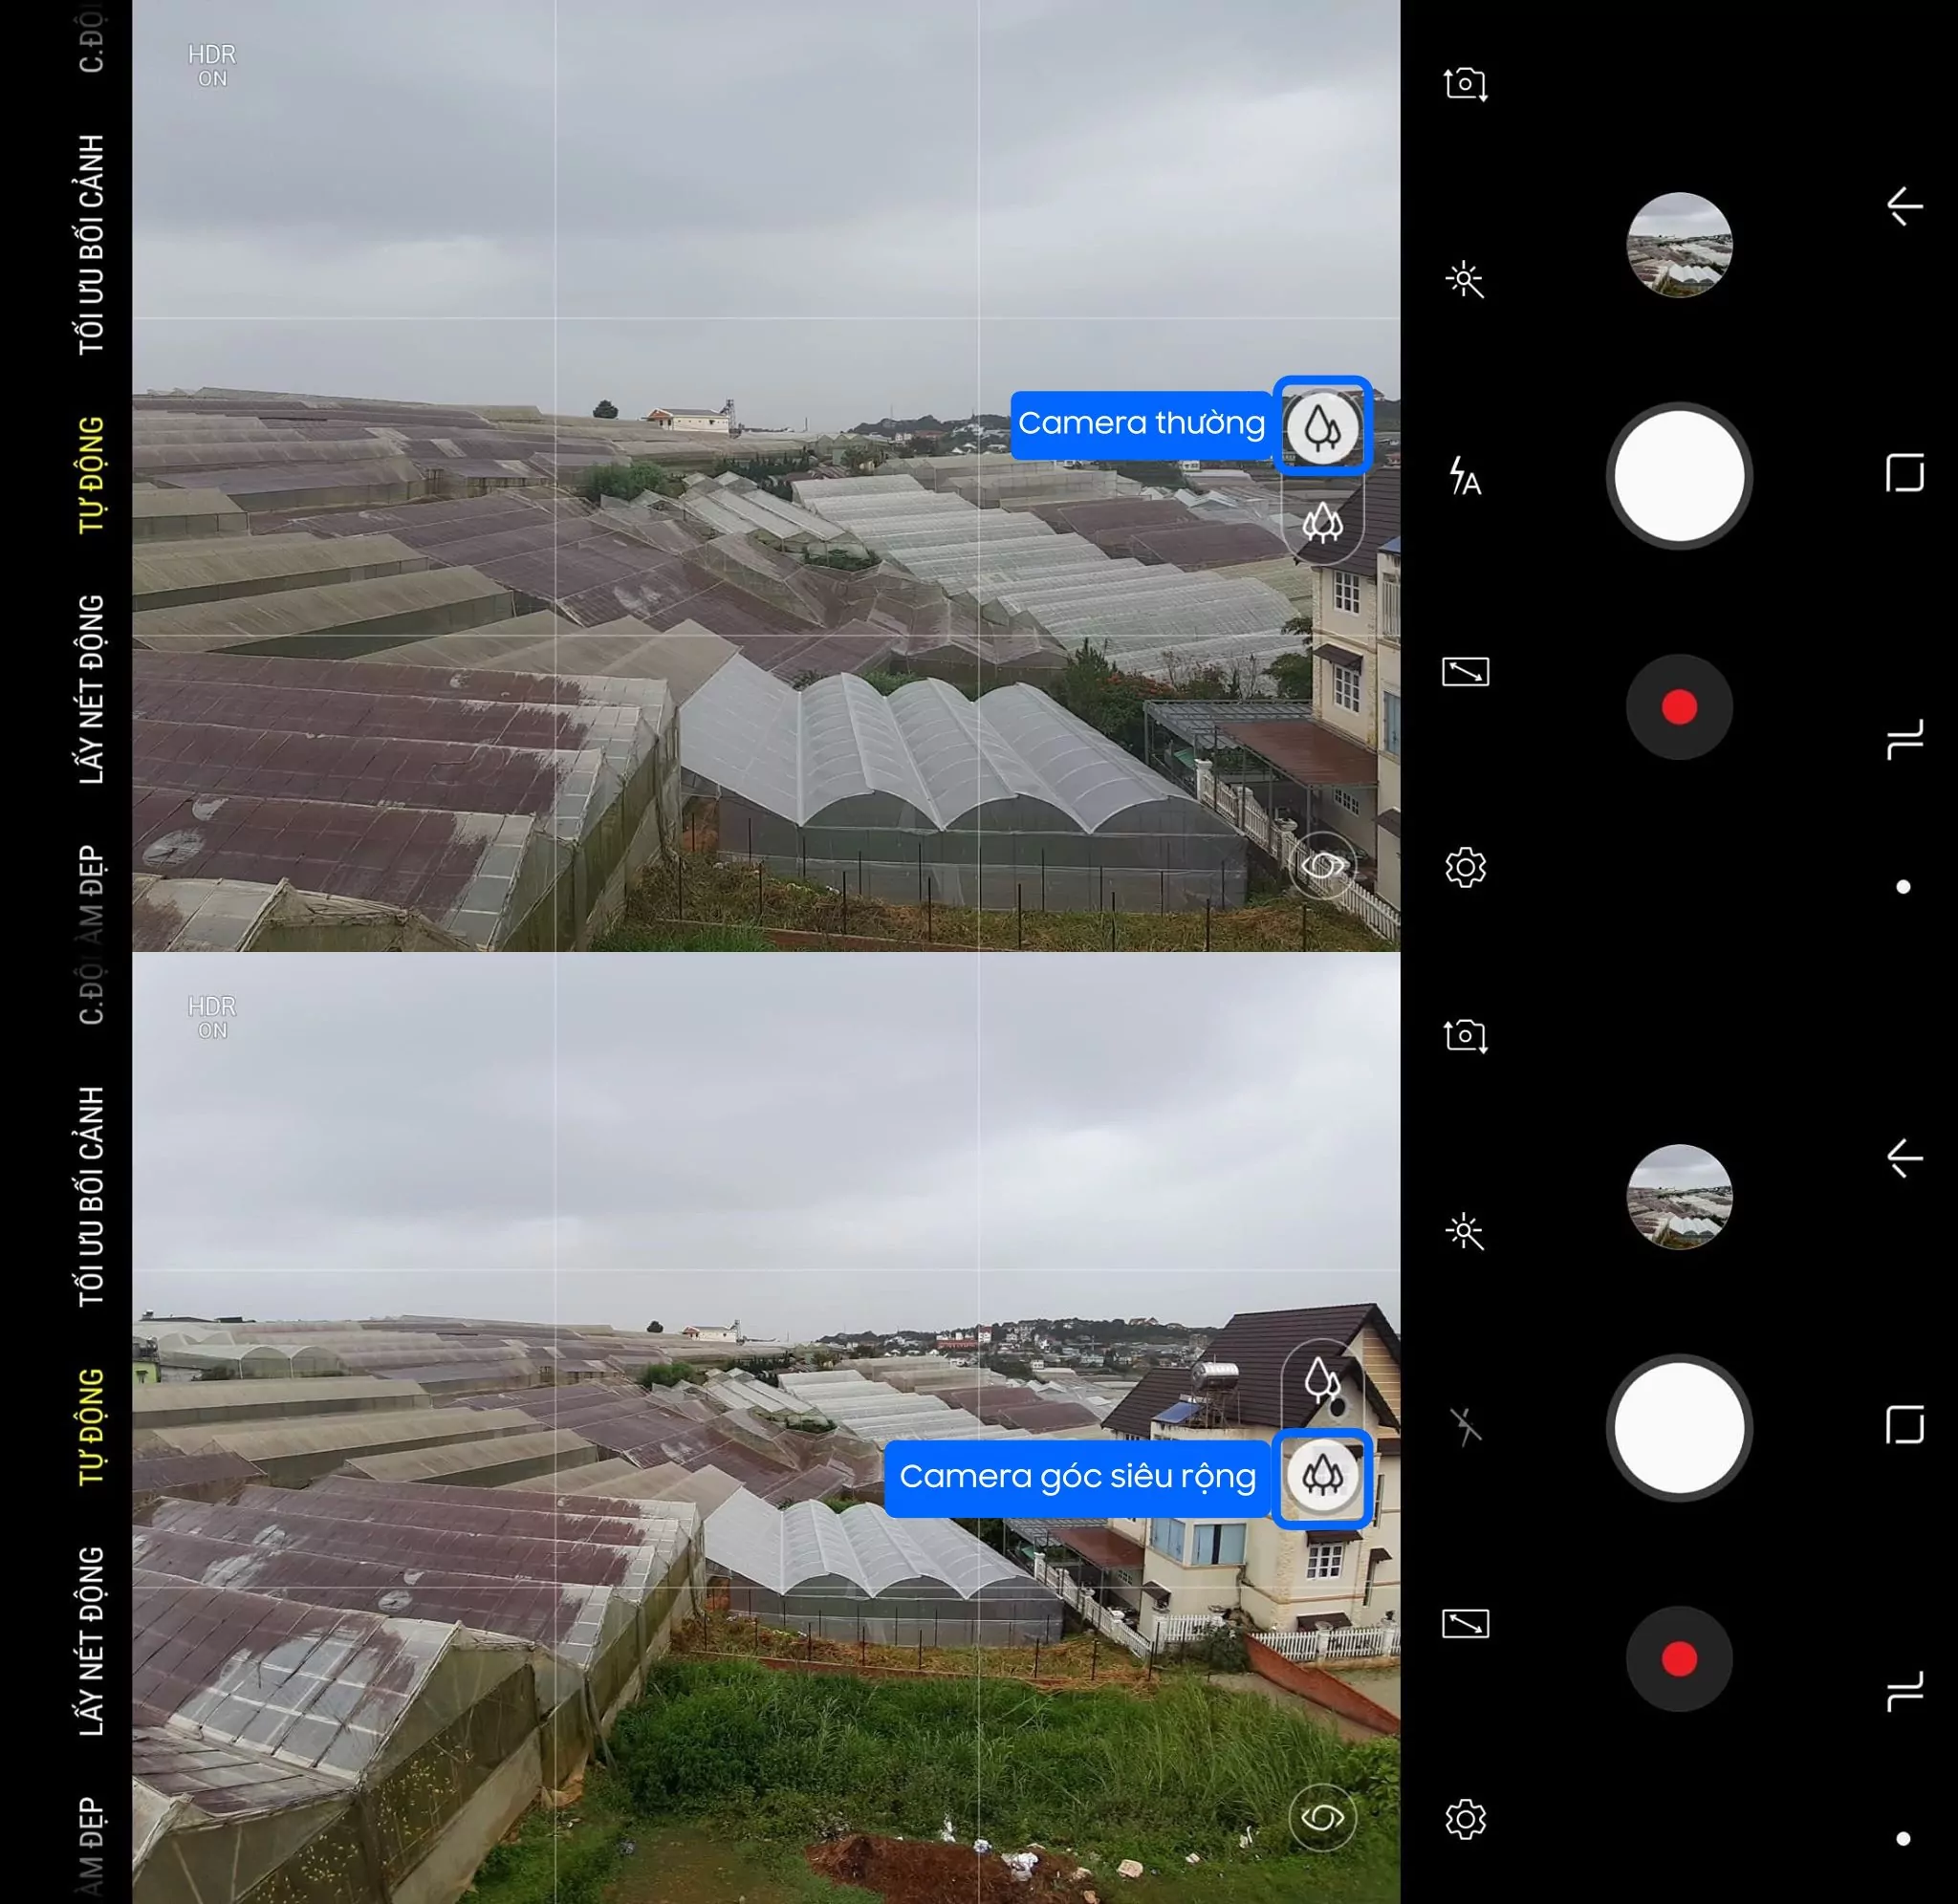 Hướng dẫn “Chụp cả thế giới” với camera góc siêu rộng trên Galaxy A7